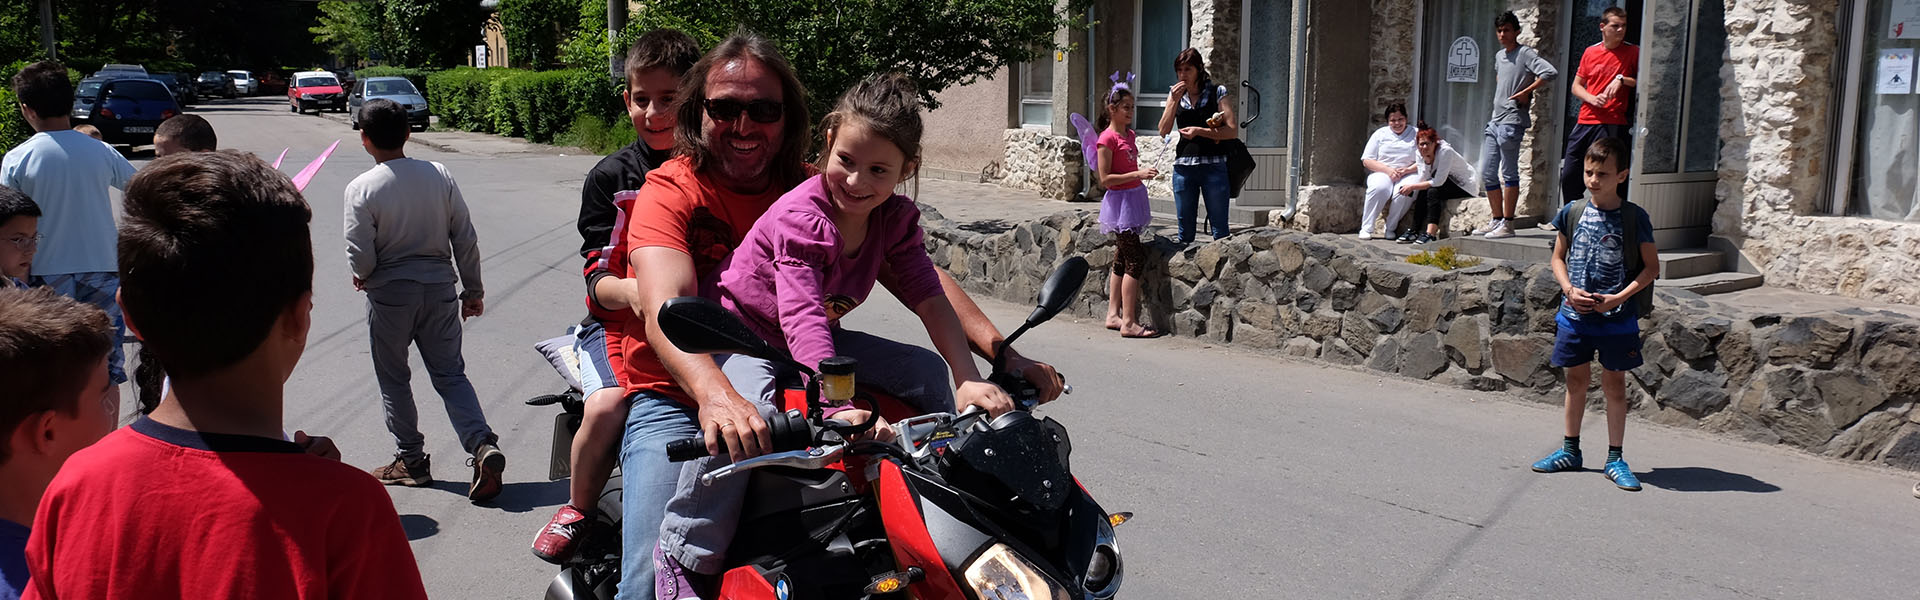 Durch unsere Liebe zum Motorrad sind wir deshalb stolz darauf schon seit Jahren ein Kinderheim in Rumänien unterstützen zu können.